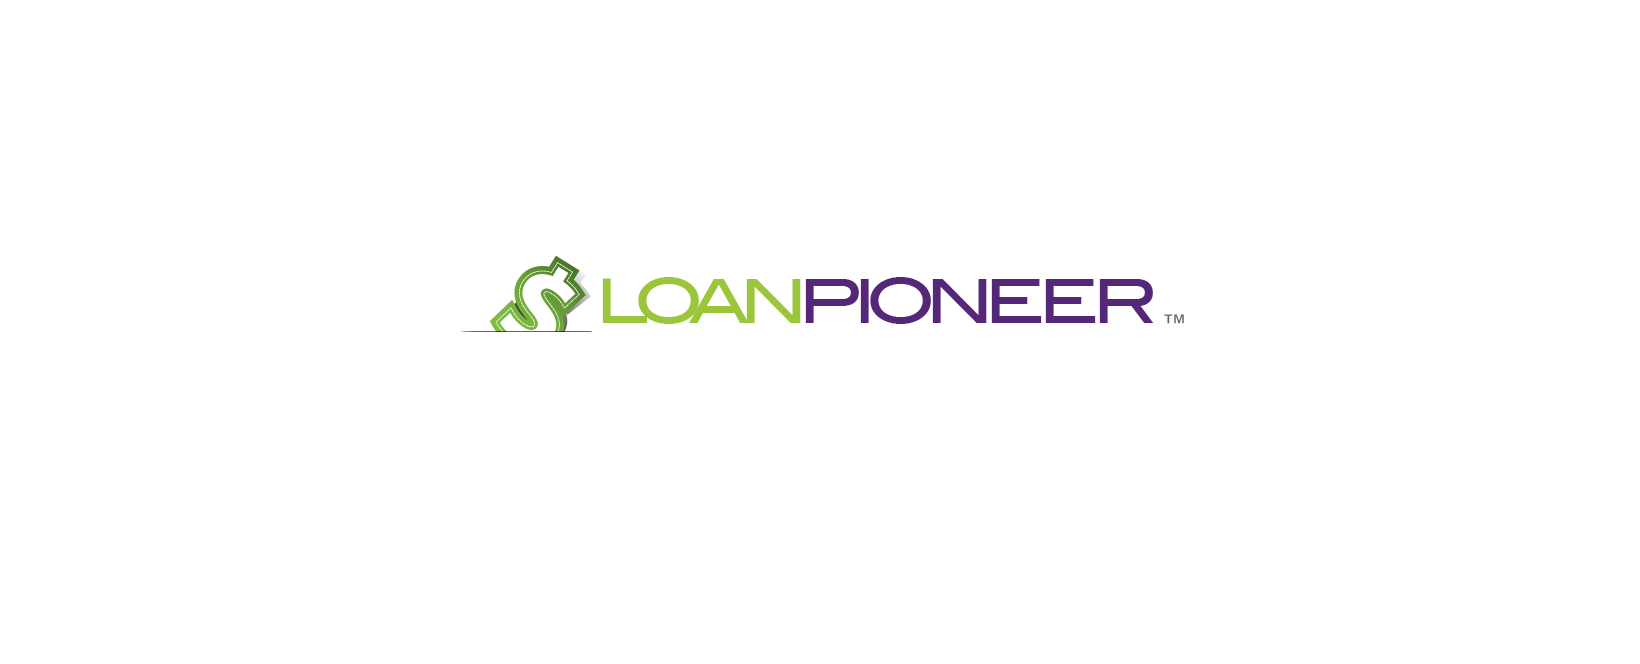 Loan Pioneer Discount Code 2022